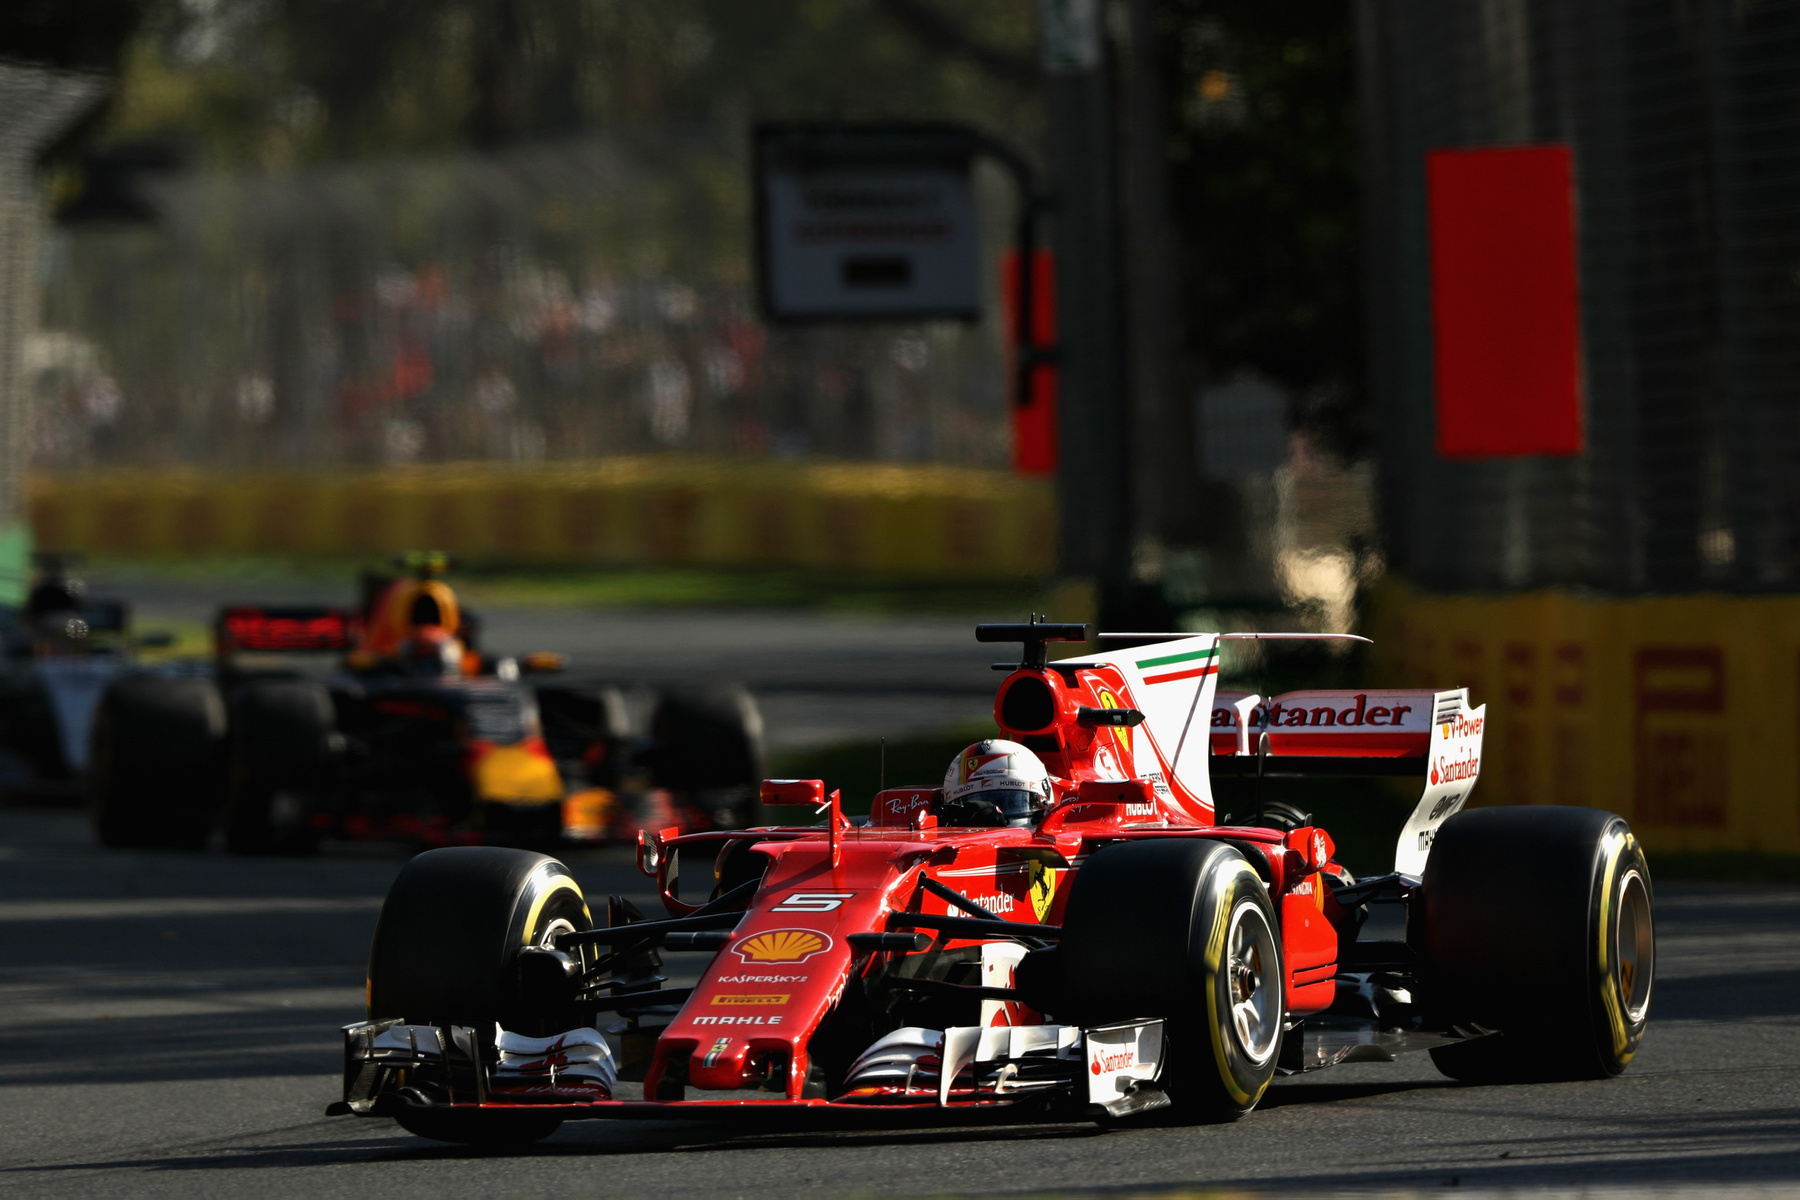 Vettelnek a szezonnyitó megnyerése jó jel, aki Ausztráliát nyerte, az többnyire világbajnok lett, mióta itt kezdődik az idény. 